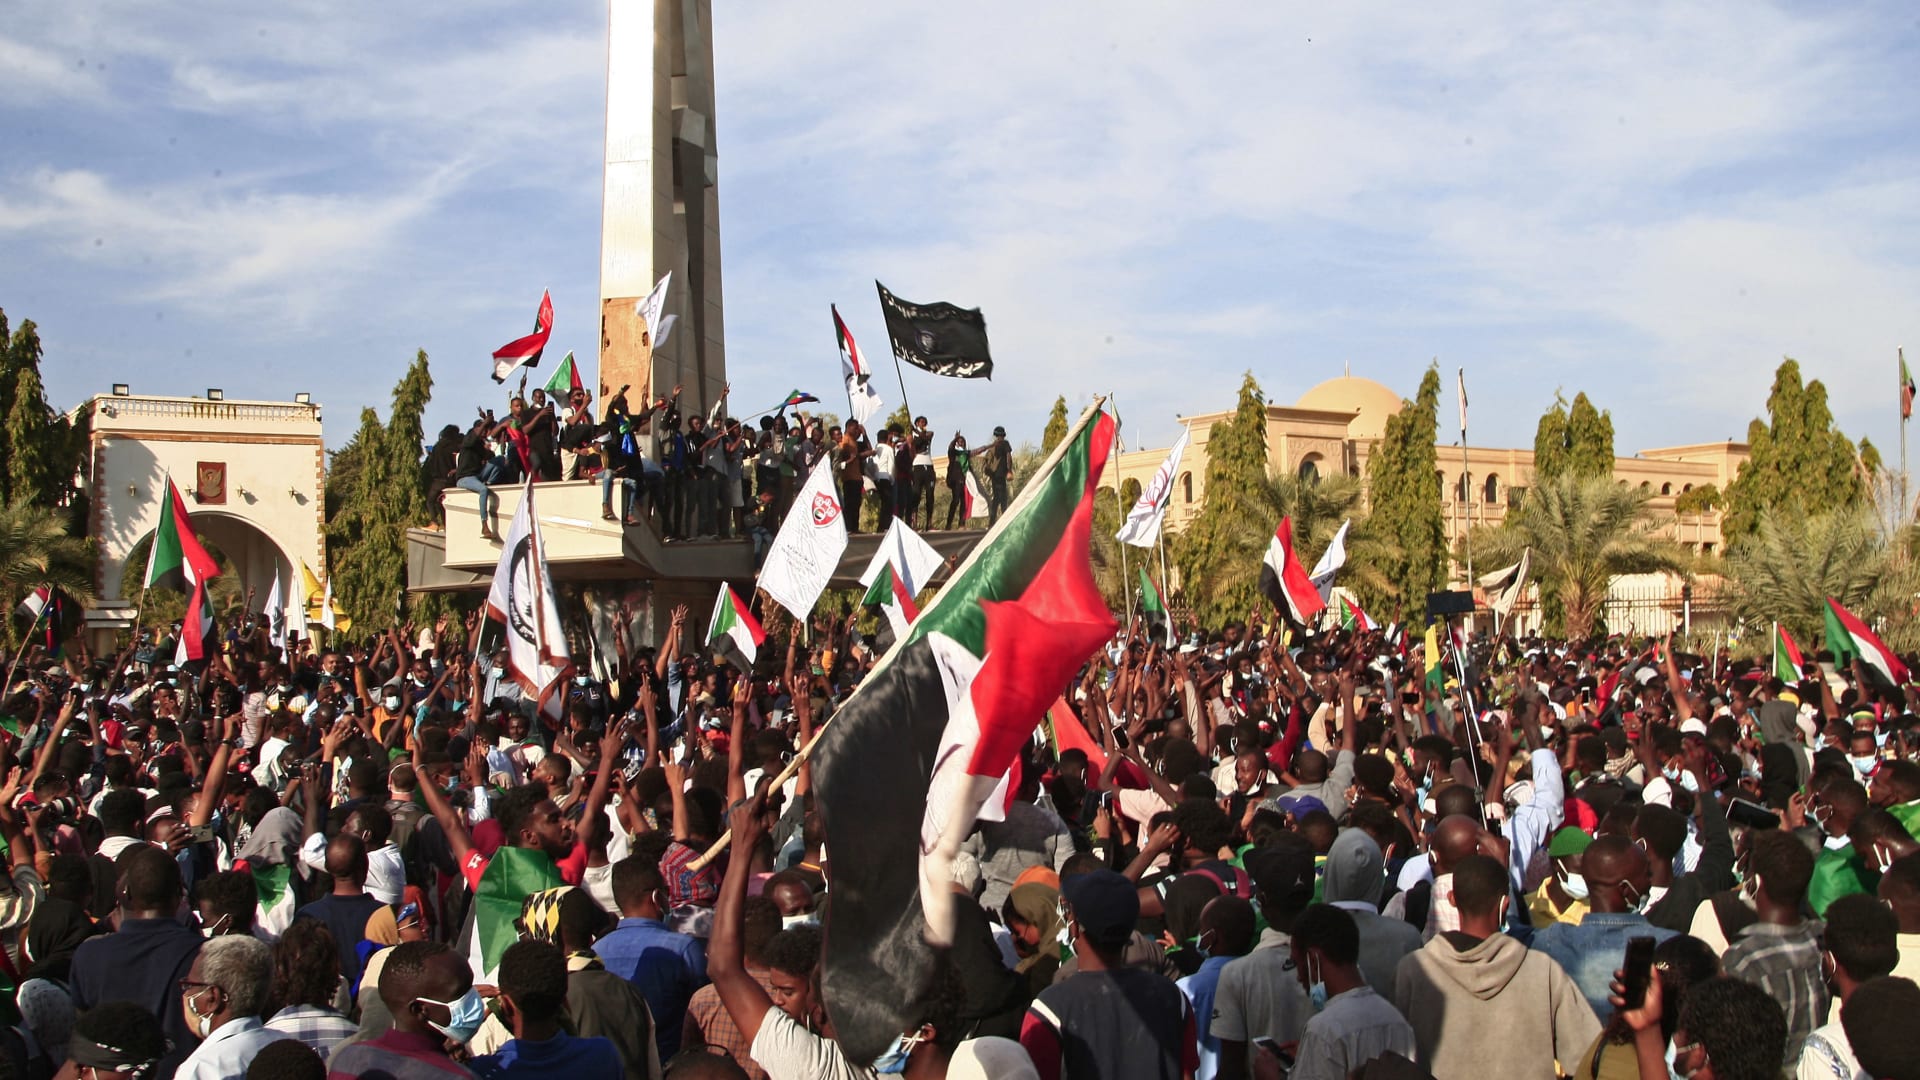 آلاف السودانيين يحتجون على الانقلاب أمام القصر الجمهوري